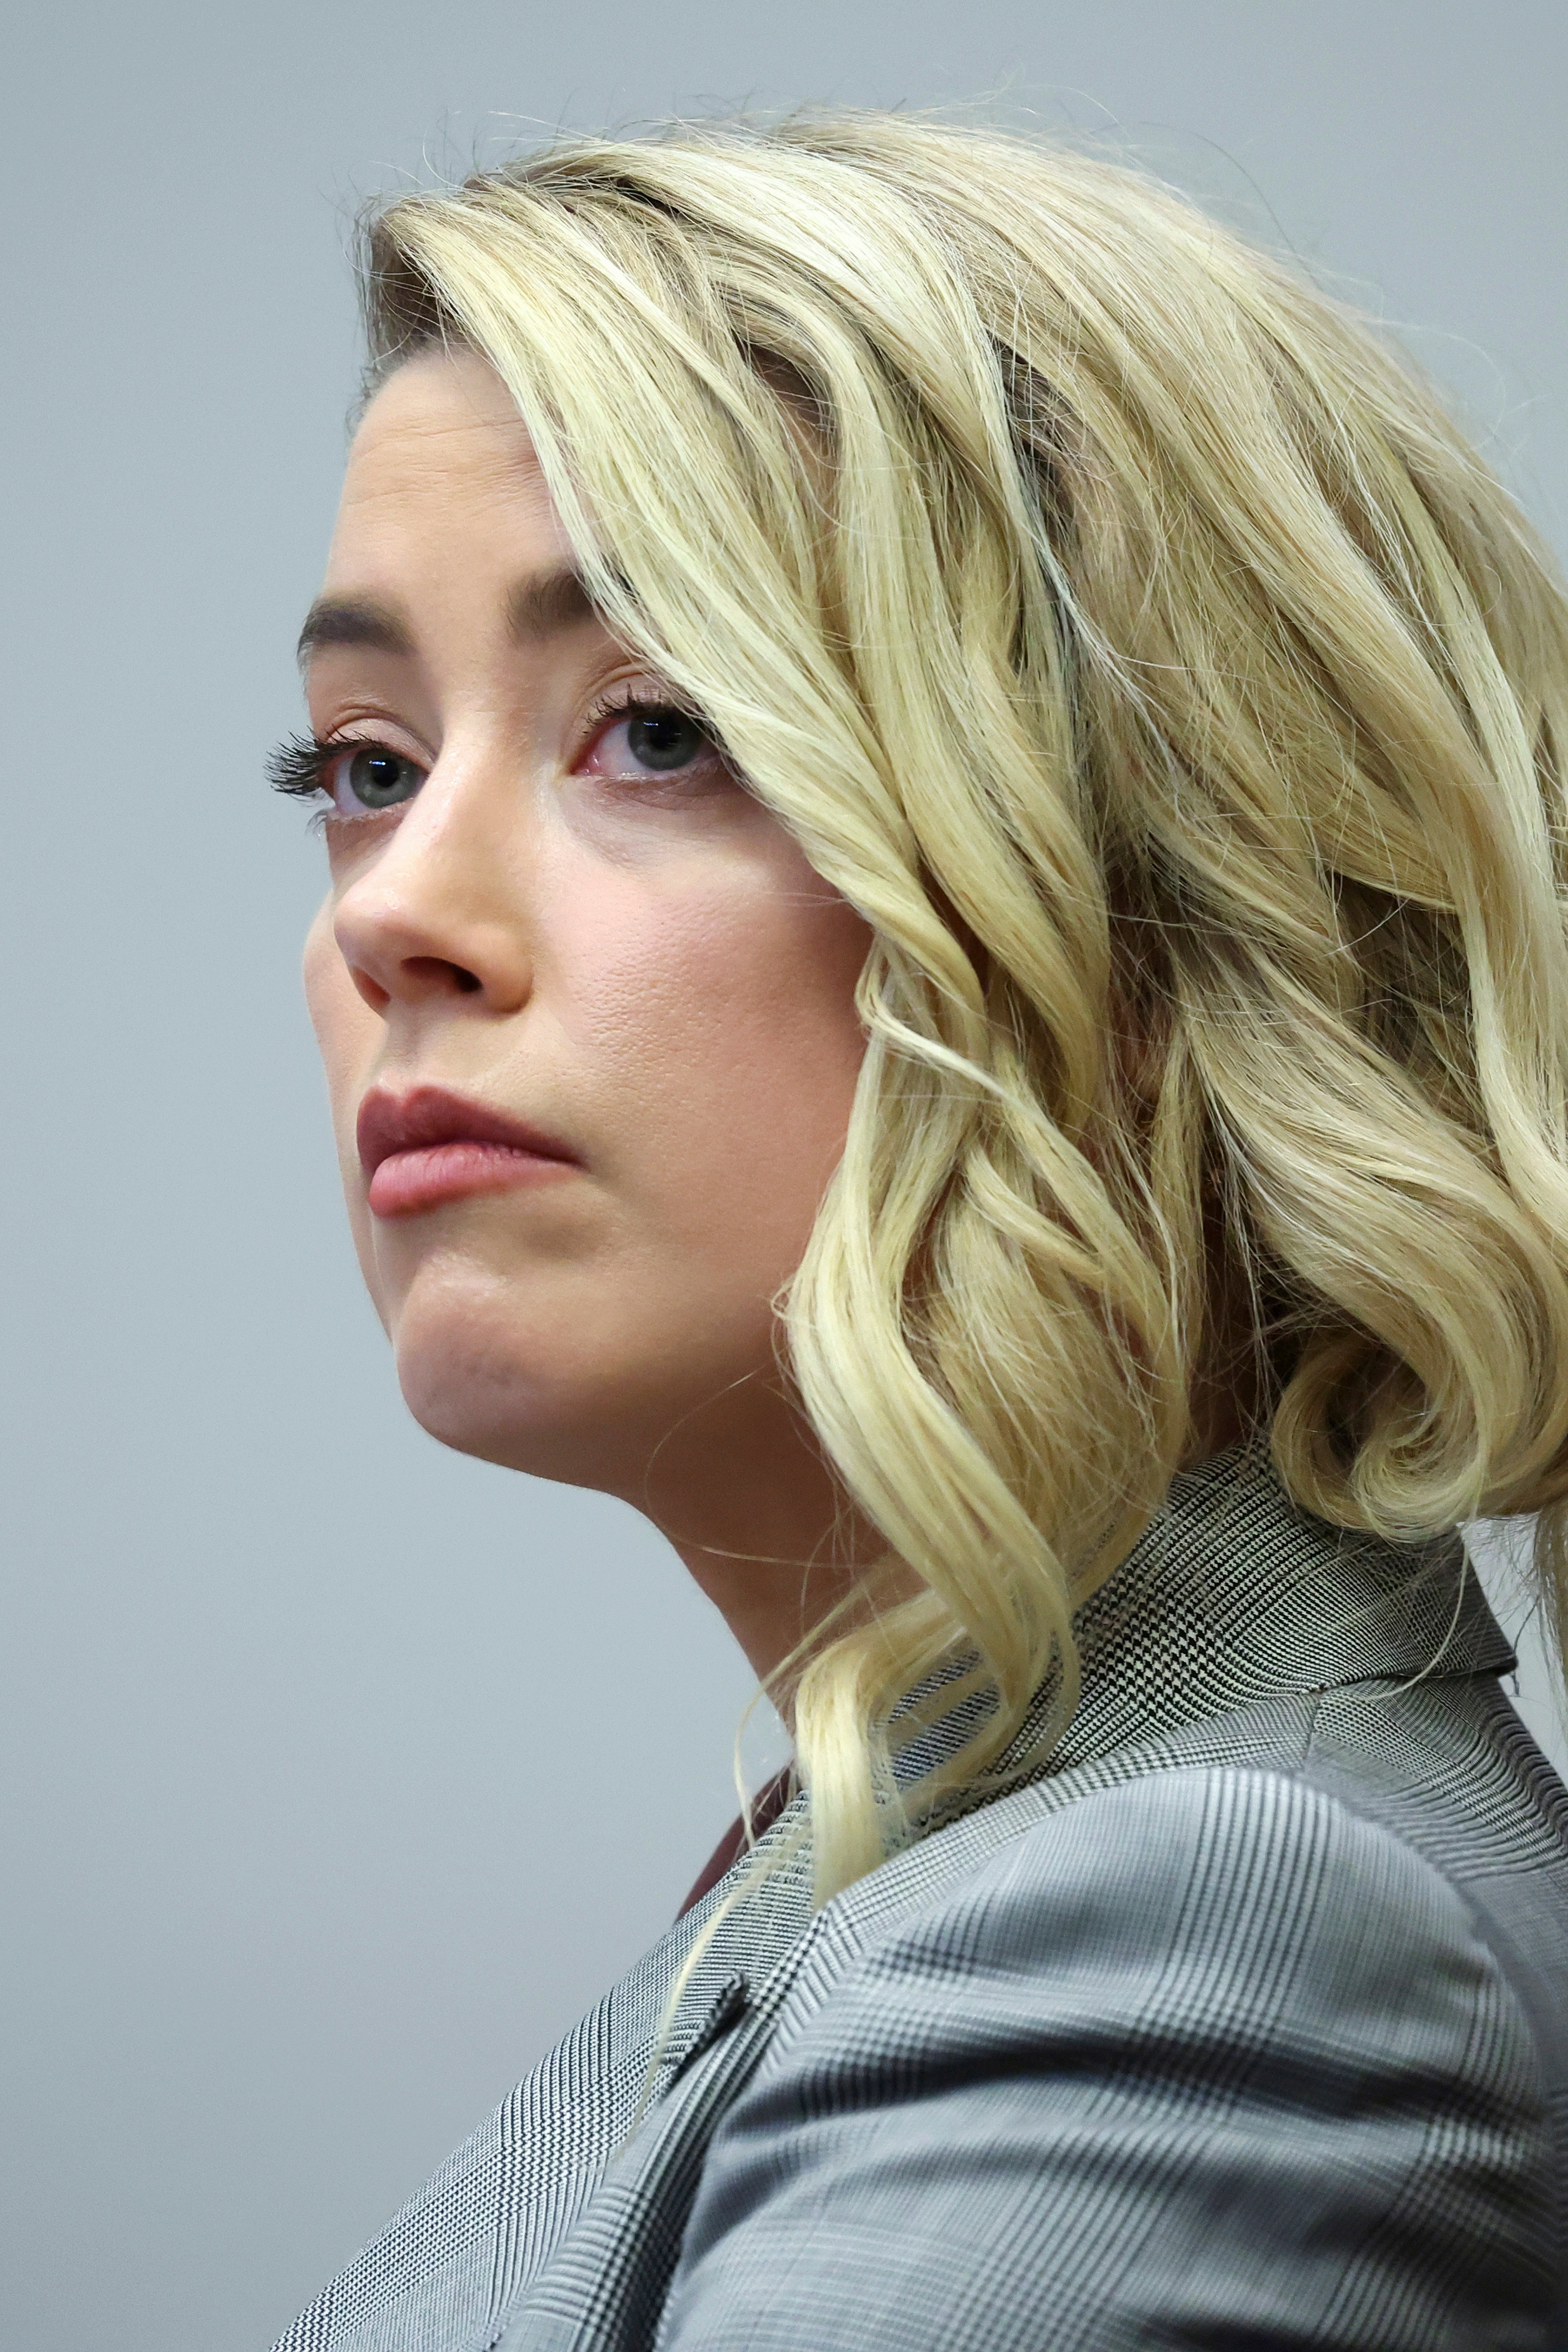 Amber Heard recuerda a los miembros del jurado que “soy un ser humano” al volver al estrado (Michael Reynolds/AP)